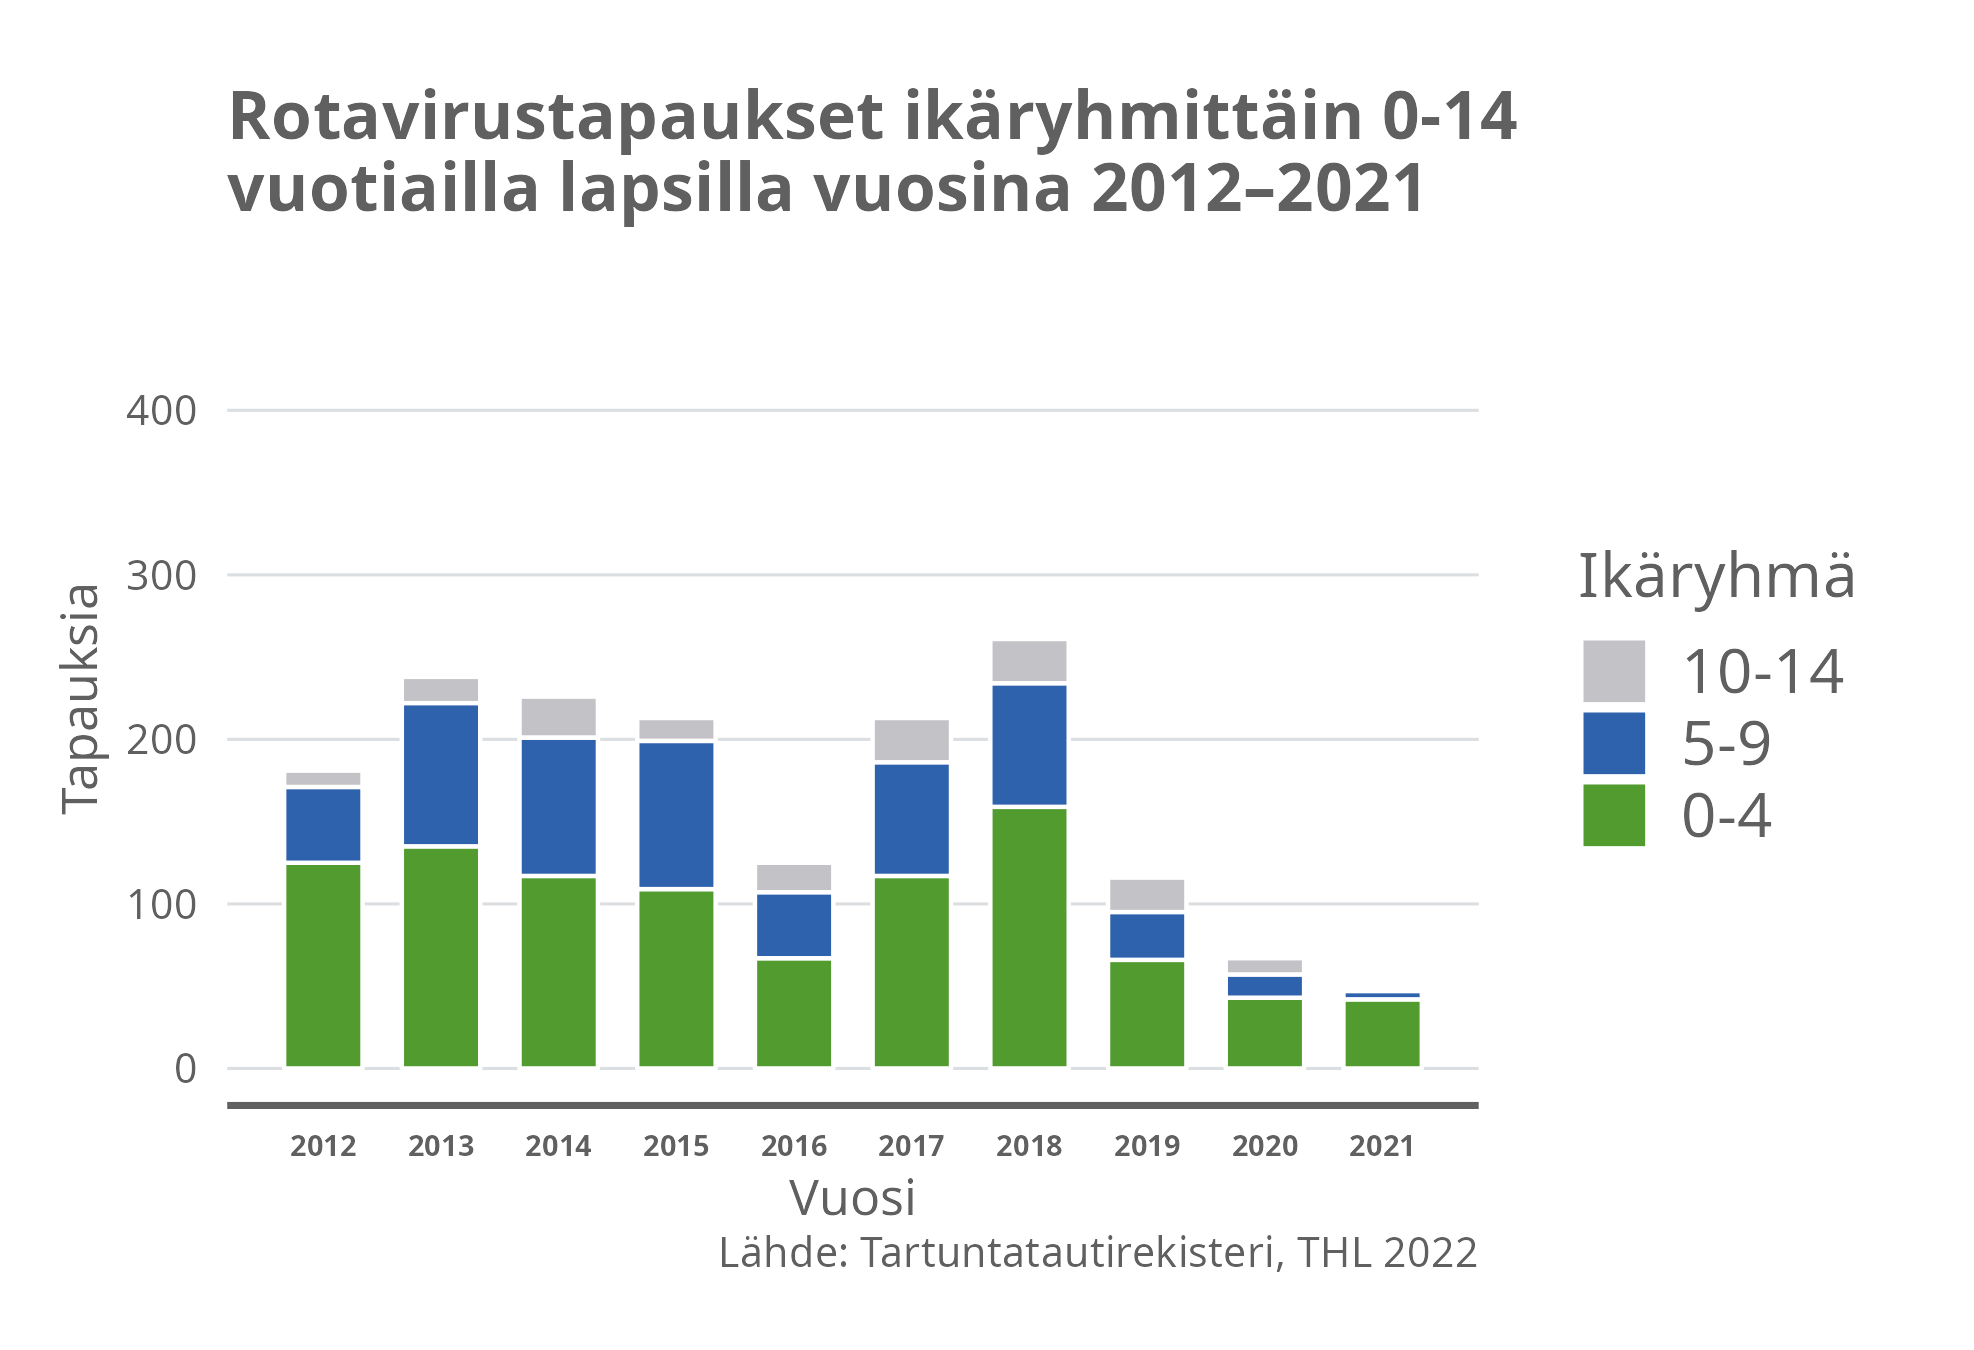 Rotavirustapaukset ikäryhmittäin 0-14 vuotiailla lapsilla vuosina 2012-2021.